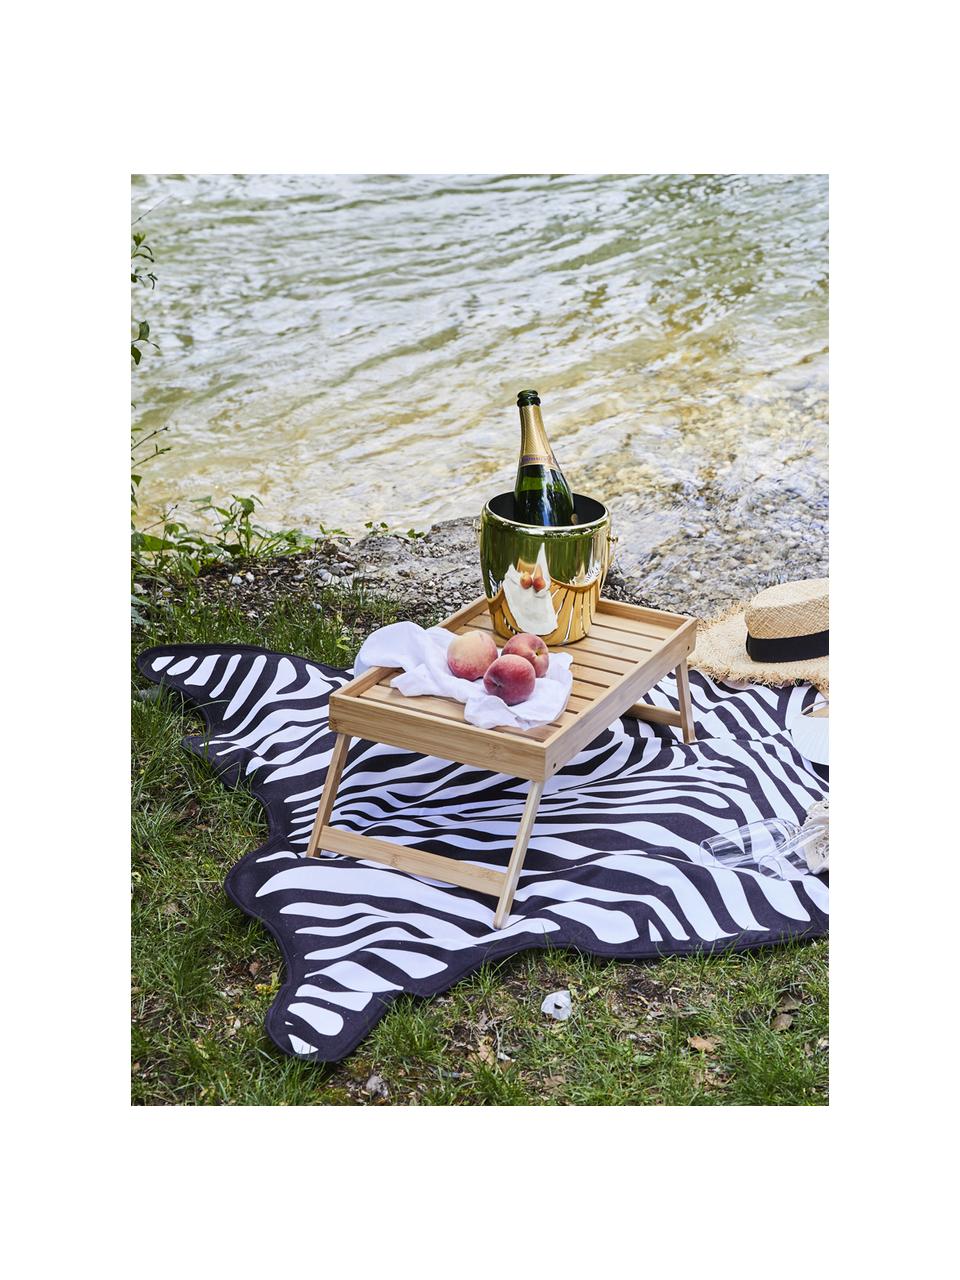 Strandtuch Wildhorse mit Zebra Print, 55% Polyester, 45% Baumwolle
Sehr leichte Qualität 340 g/m², Schwarz, Weiß, 112 x 150 cm